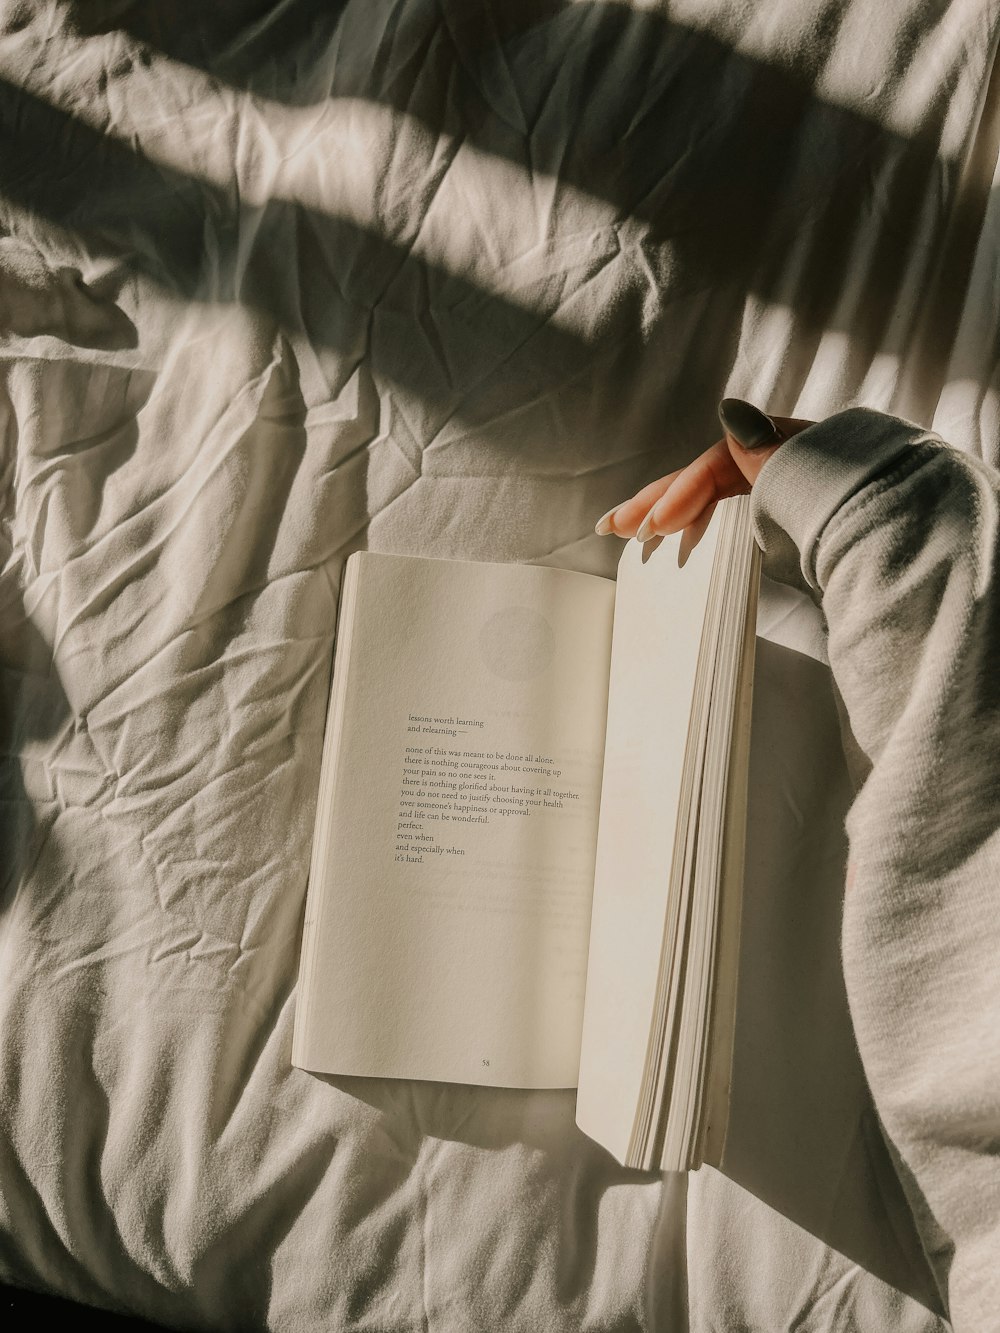 Una persona sta leggendo un libro su un letto